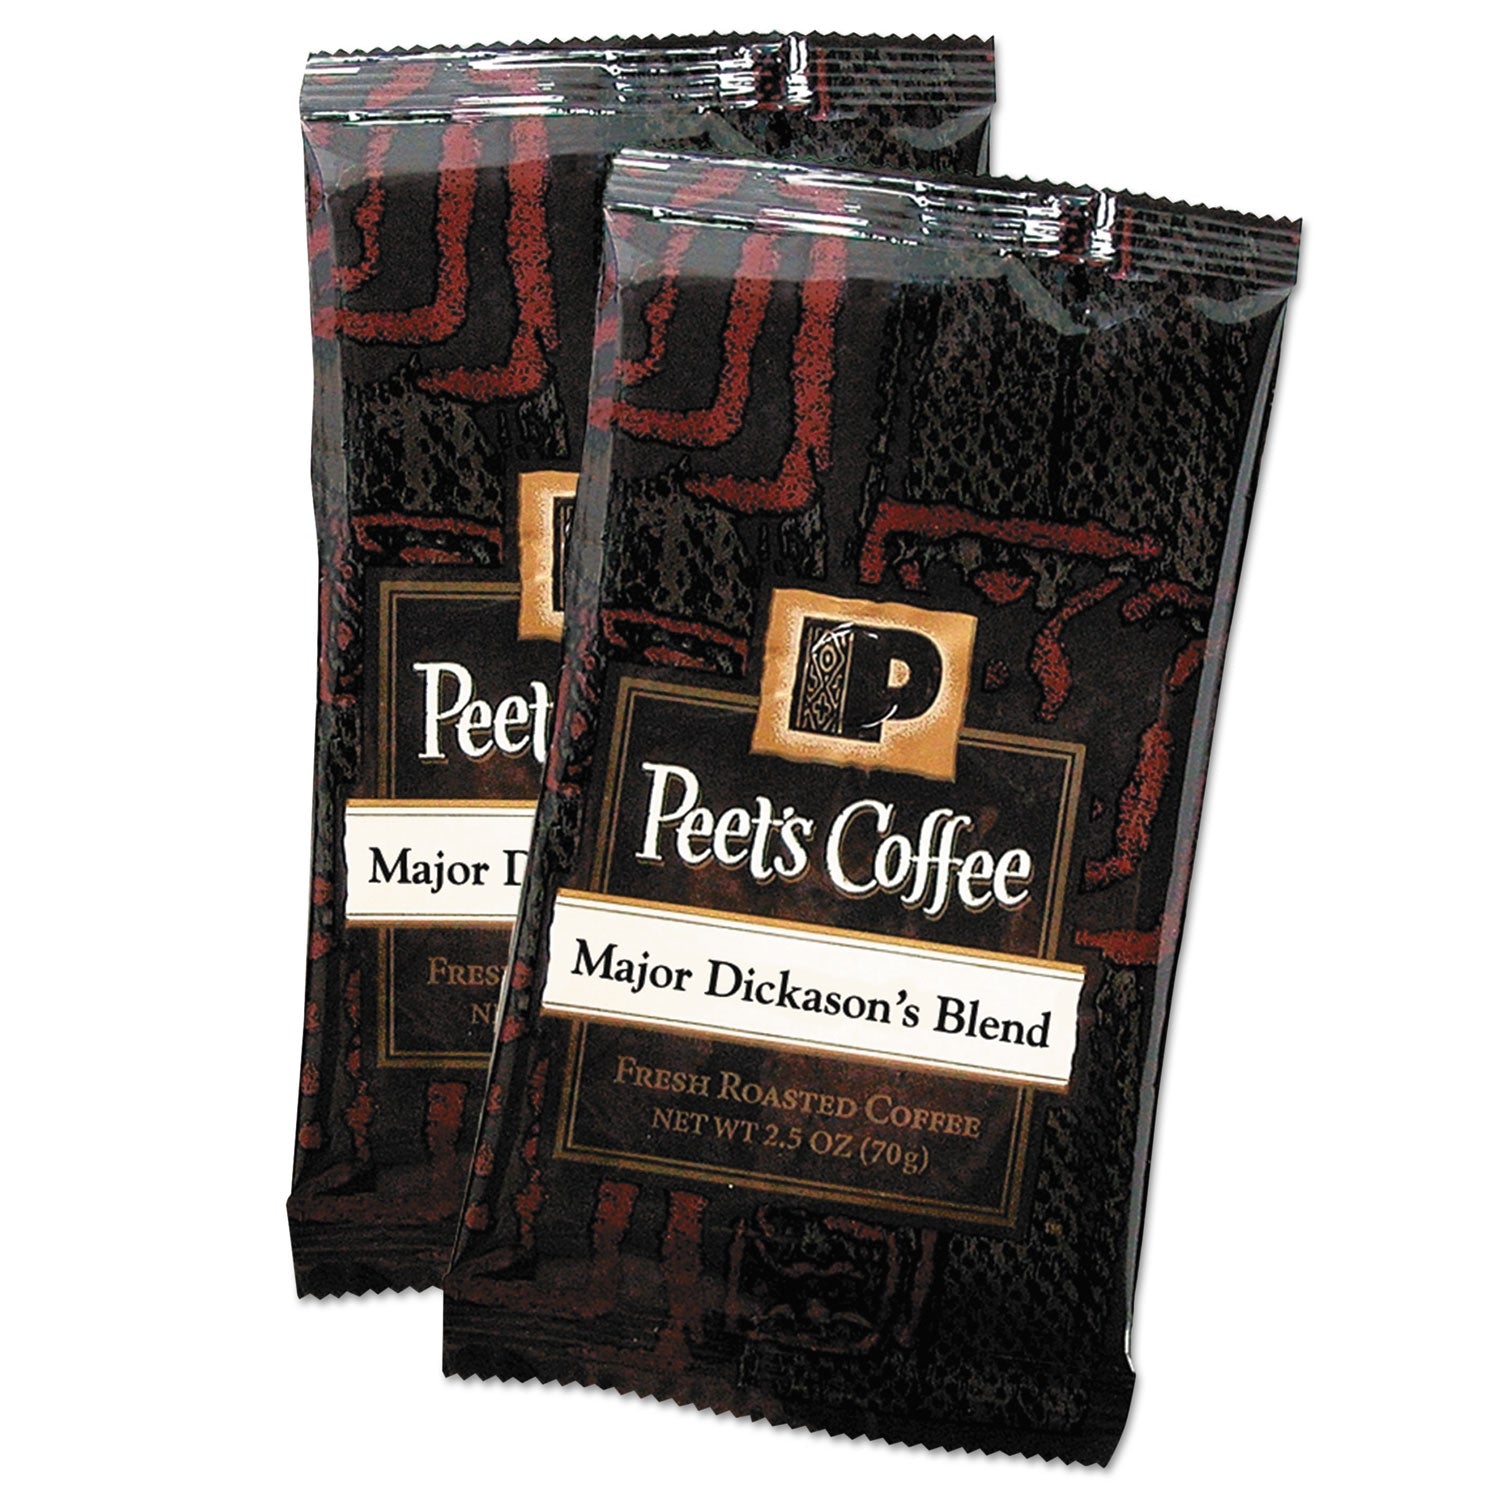 Coffee Portion Packs, Major Dickason's Blend, 2.5 oz Frack Pack, 18/Box - 